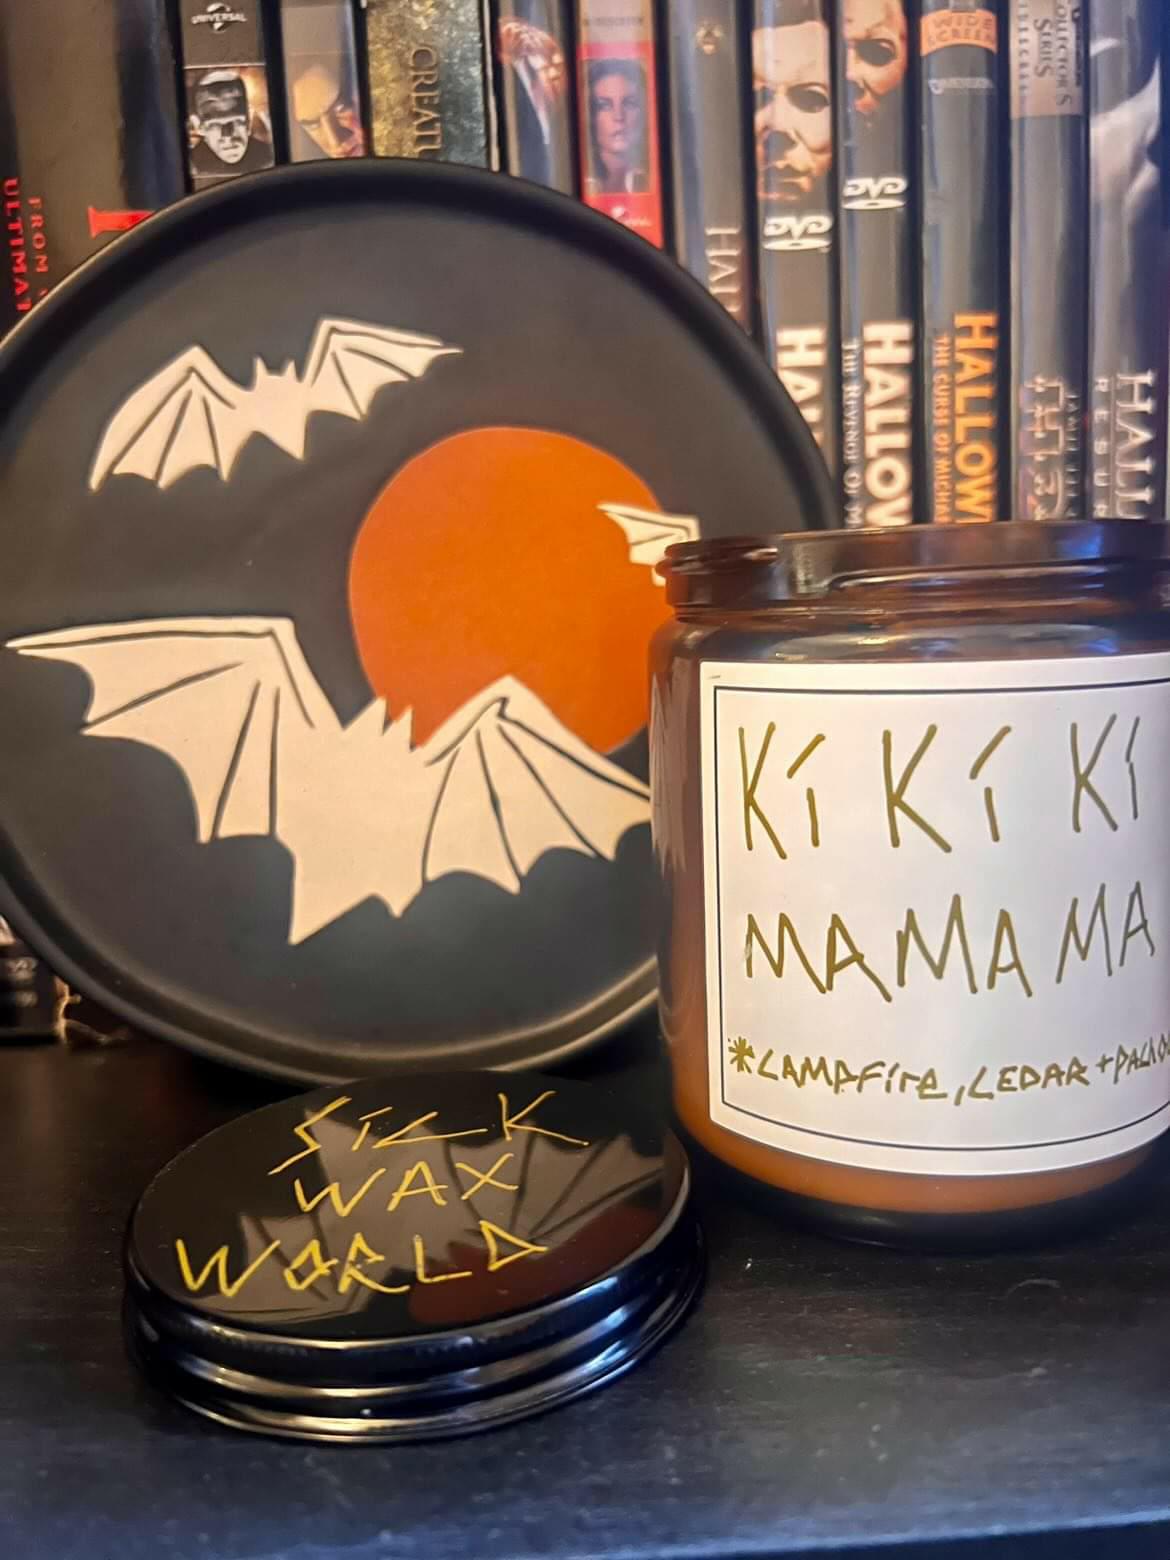 Ki Ki Ki Ma Ma Ma CANDLE by Sick Wax World